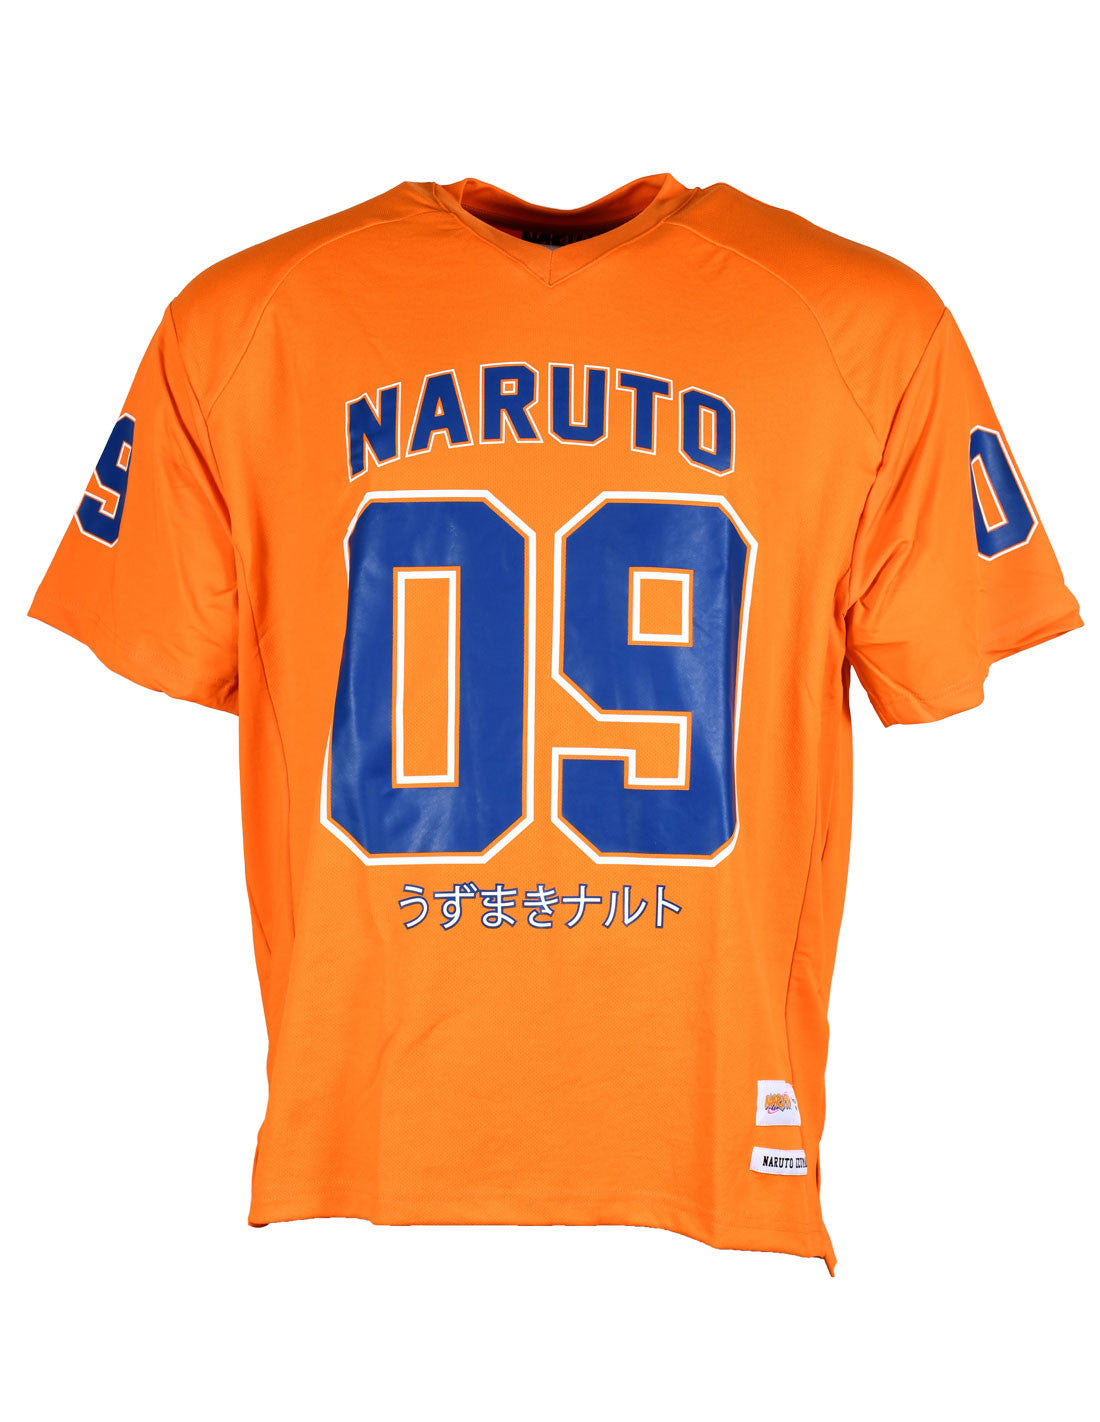 Naruto Sports T-shirt - Naruto 09